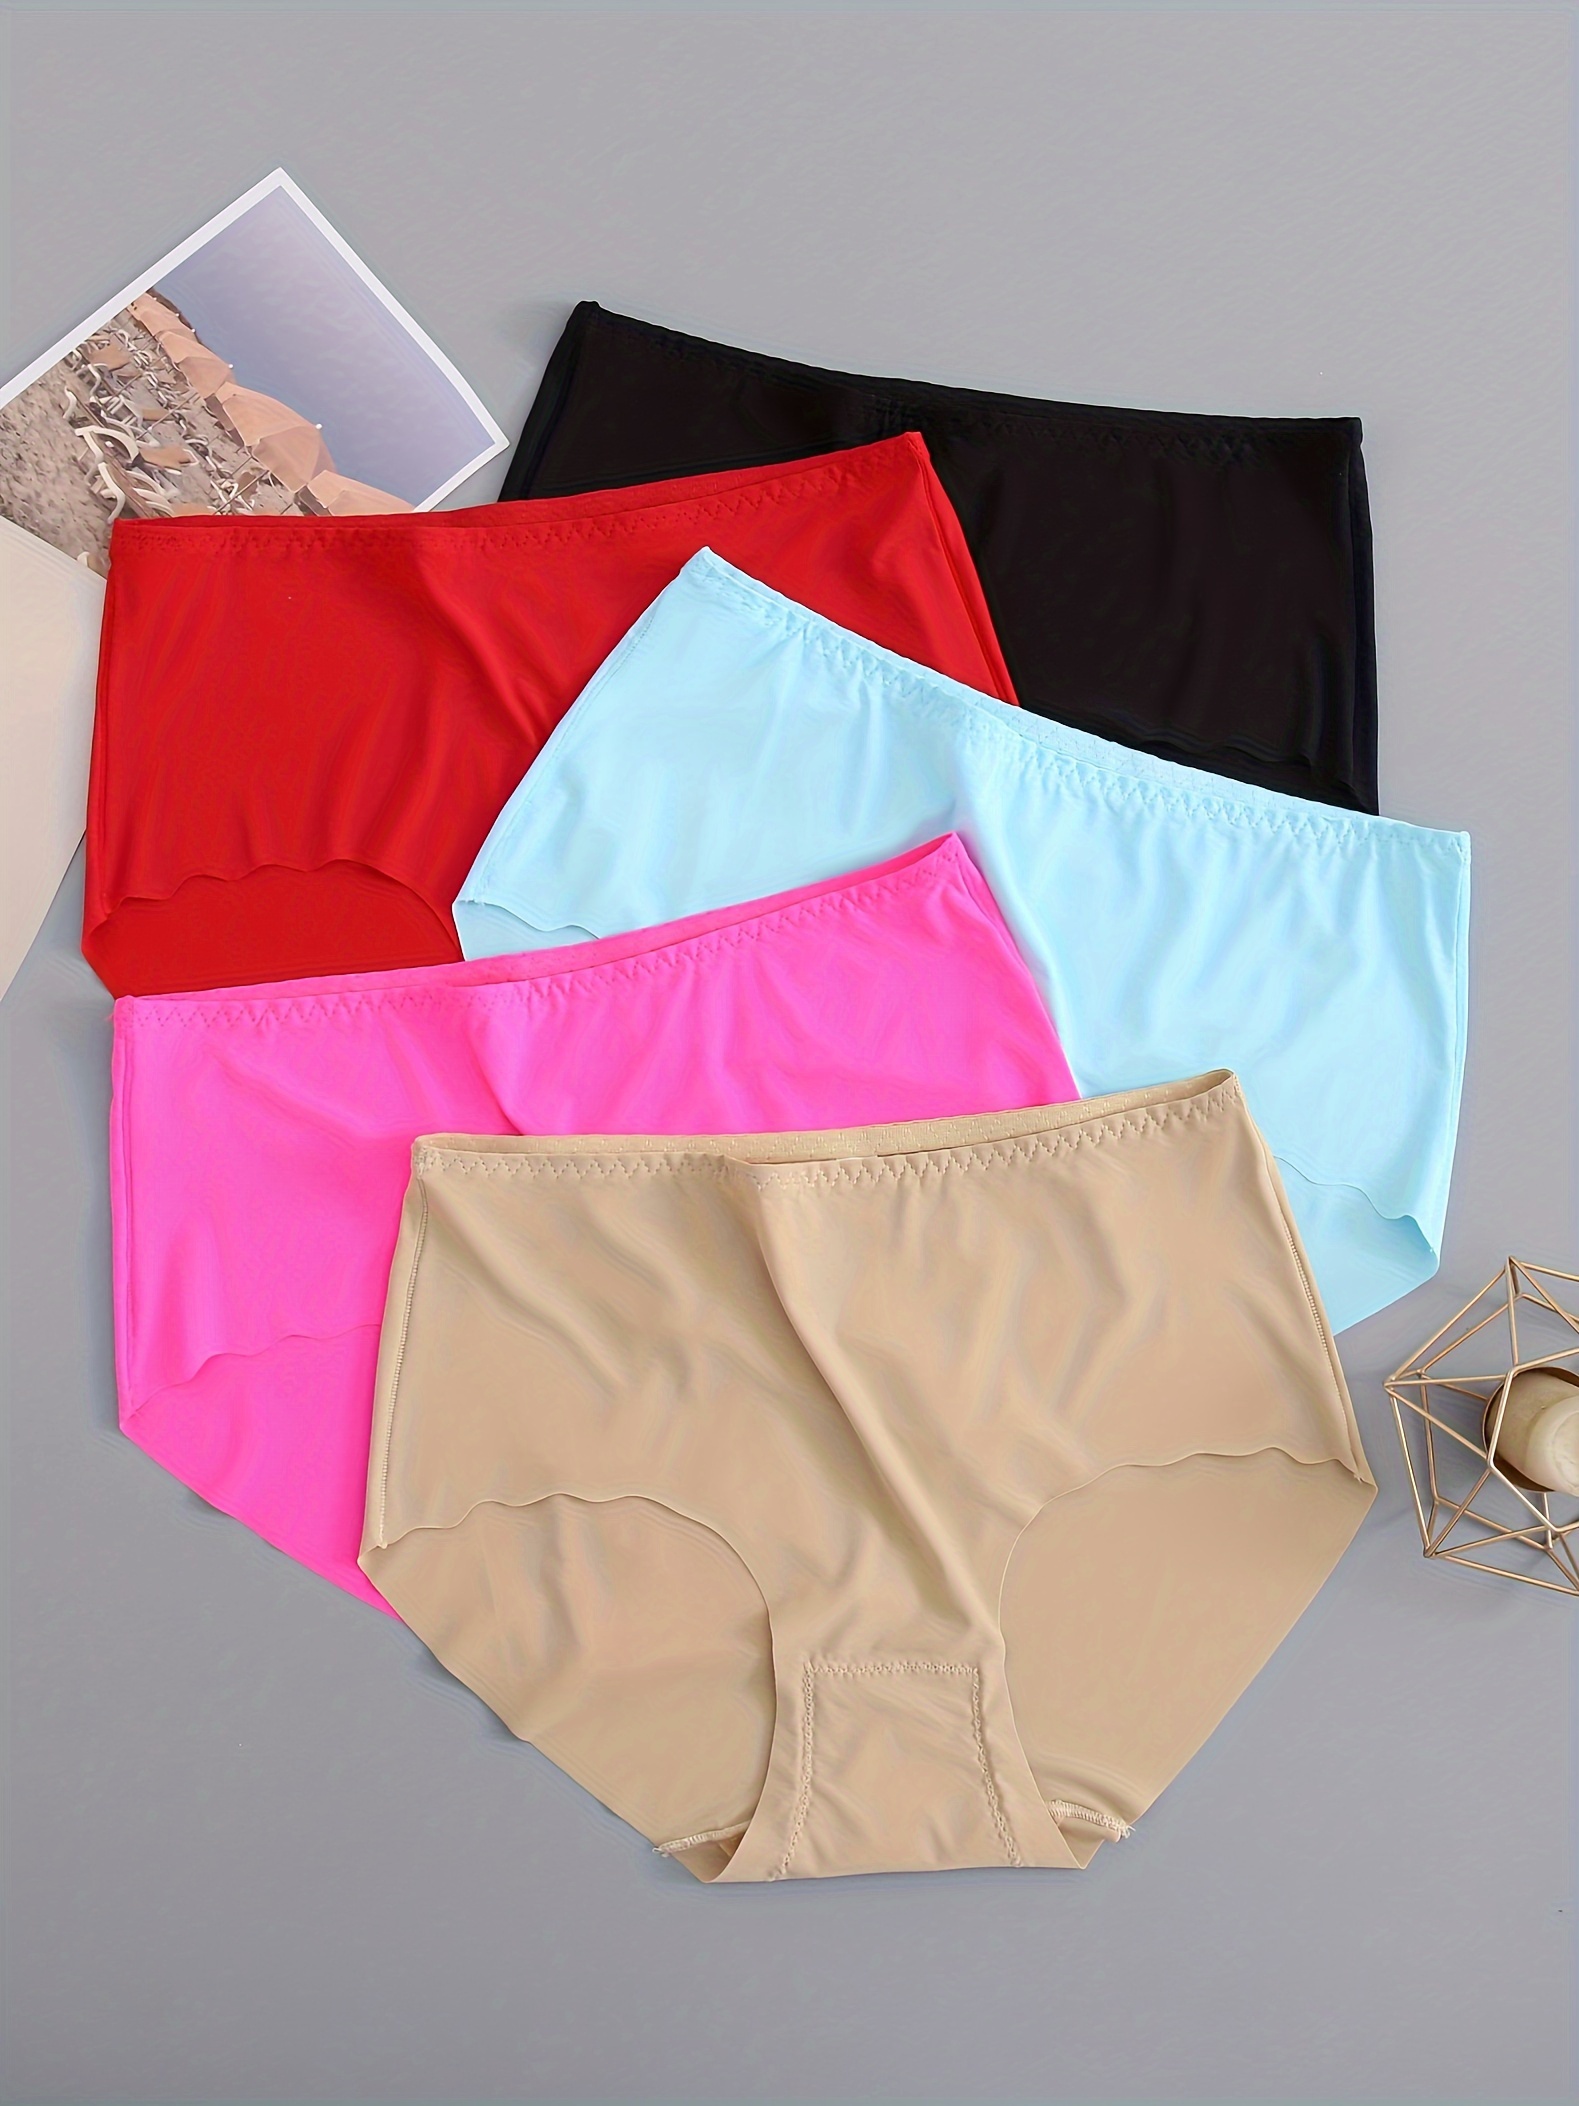 70-120kg Plus Size Ladies Underwear High Waist Stretchy Soft Women Brief  Panties